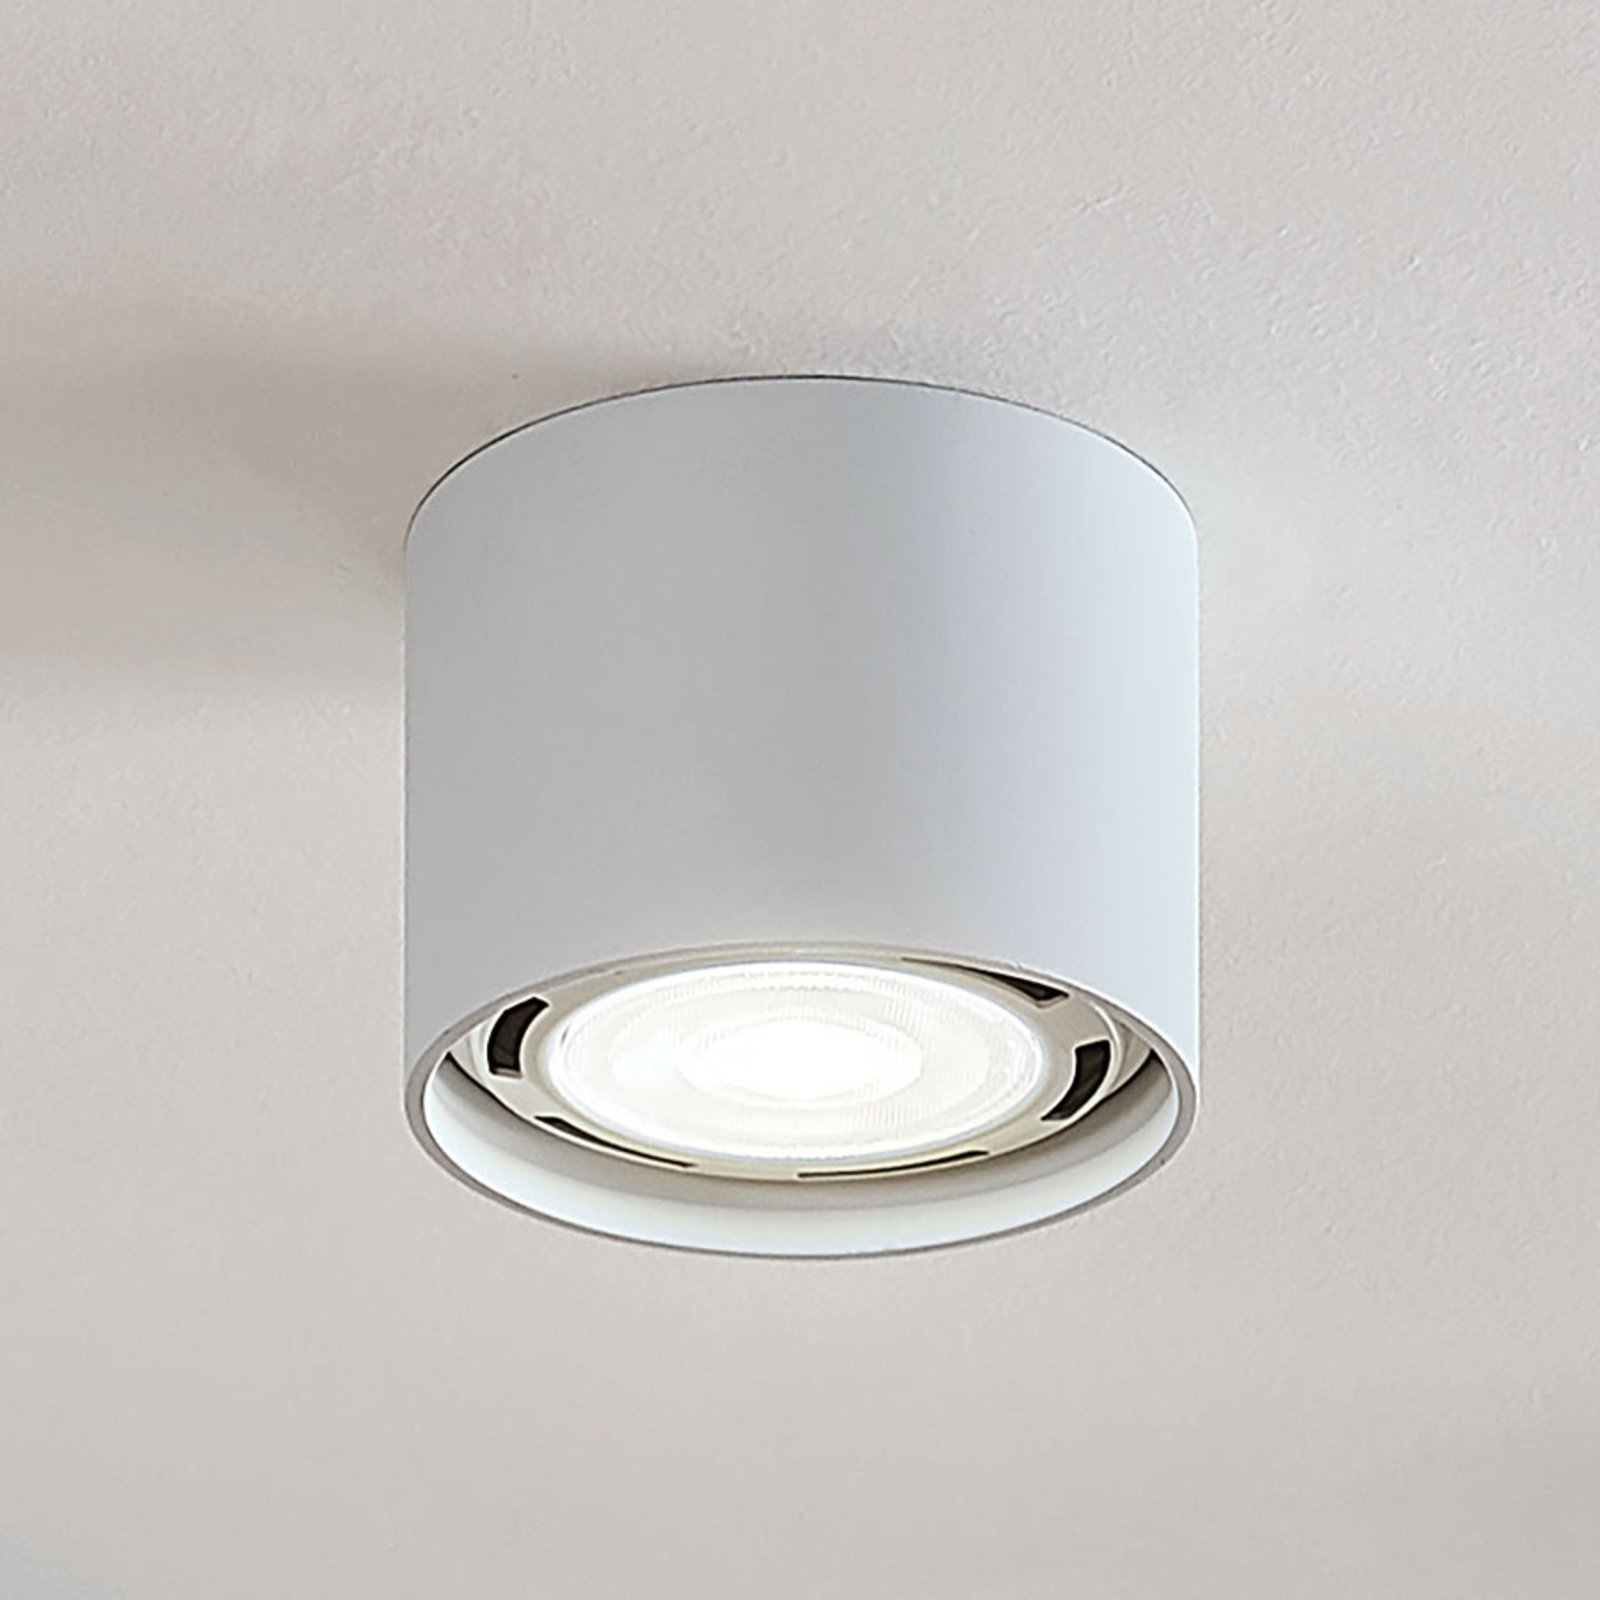 Mabel plafondspot, rond, 1-lamp, Ø 12 cm, wit